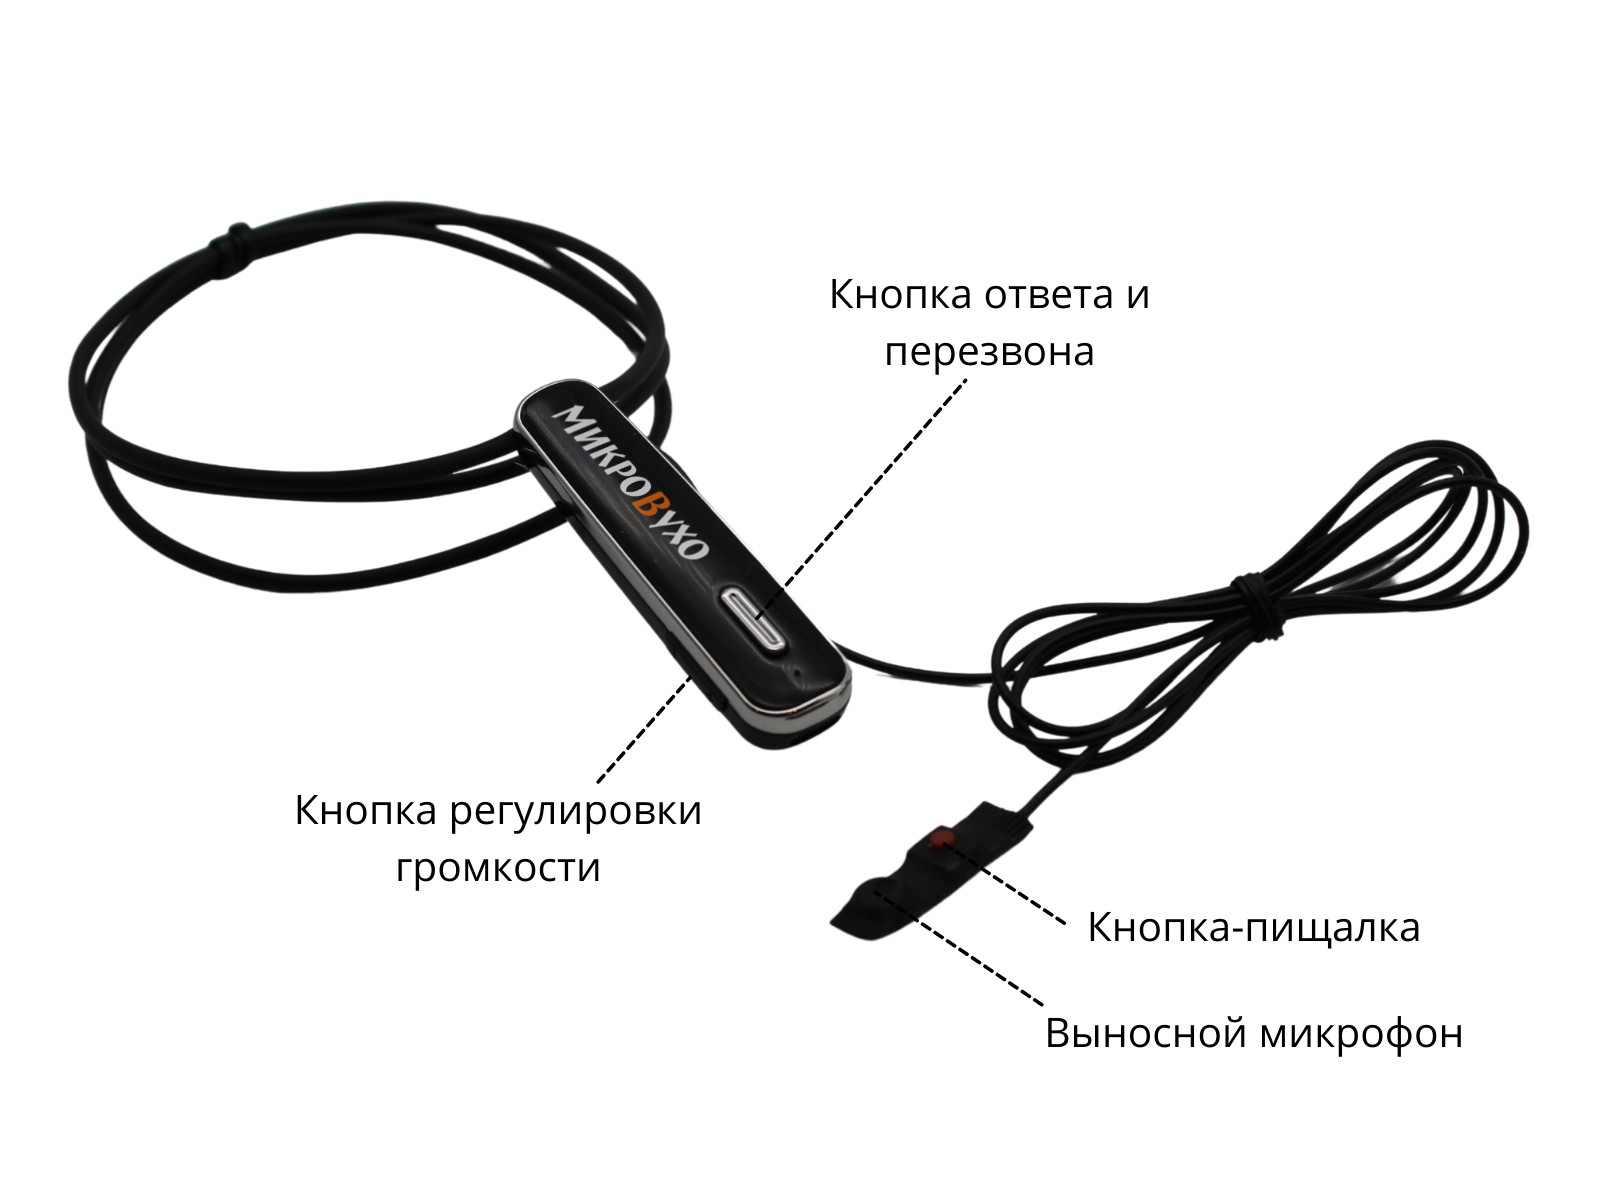 Аренда микронаушника Bluetooth Premier Lite с капсульным микронаушником K5 4 мм